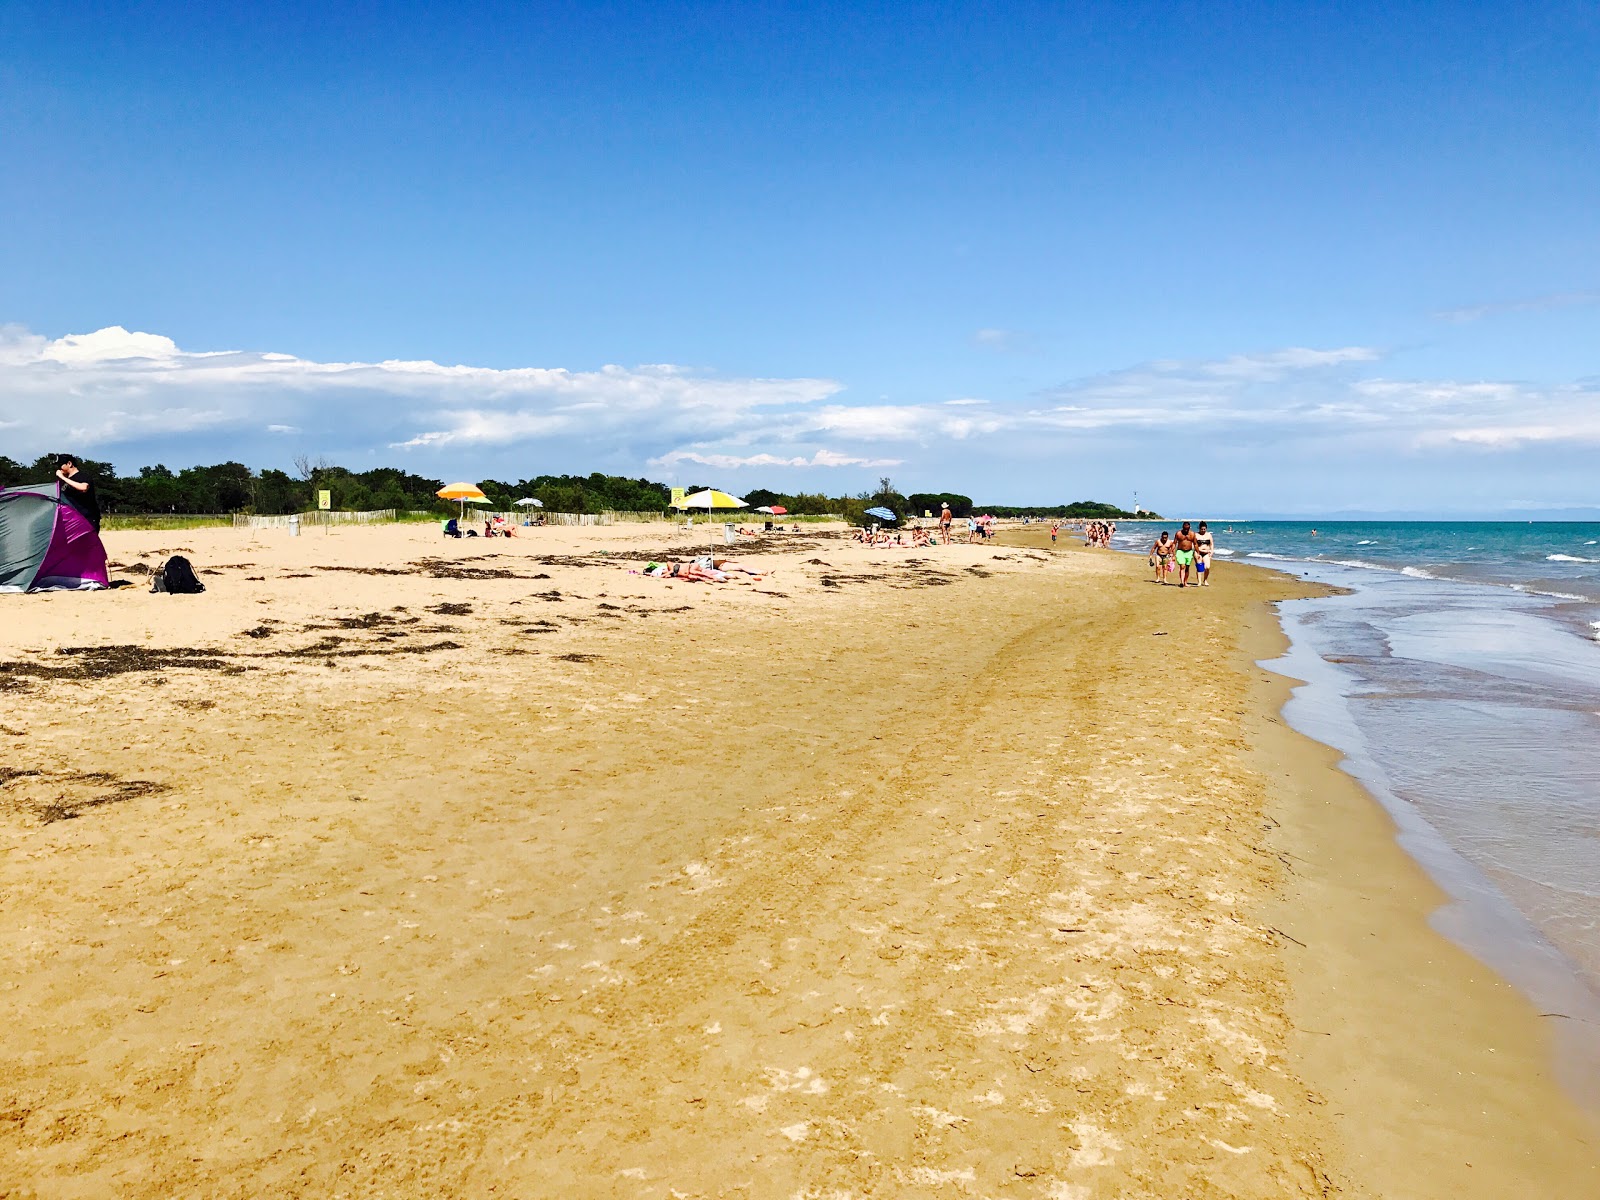 Foto di Spiaggia libera Bibione con una superficie del sabbia fine e luminosa